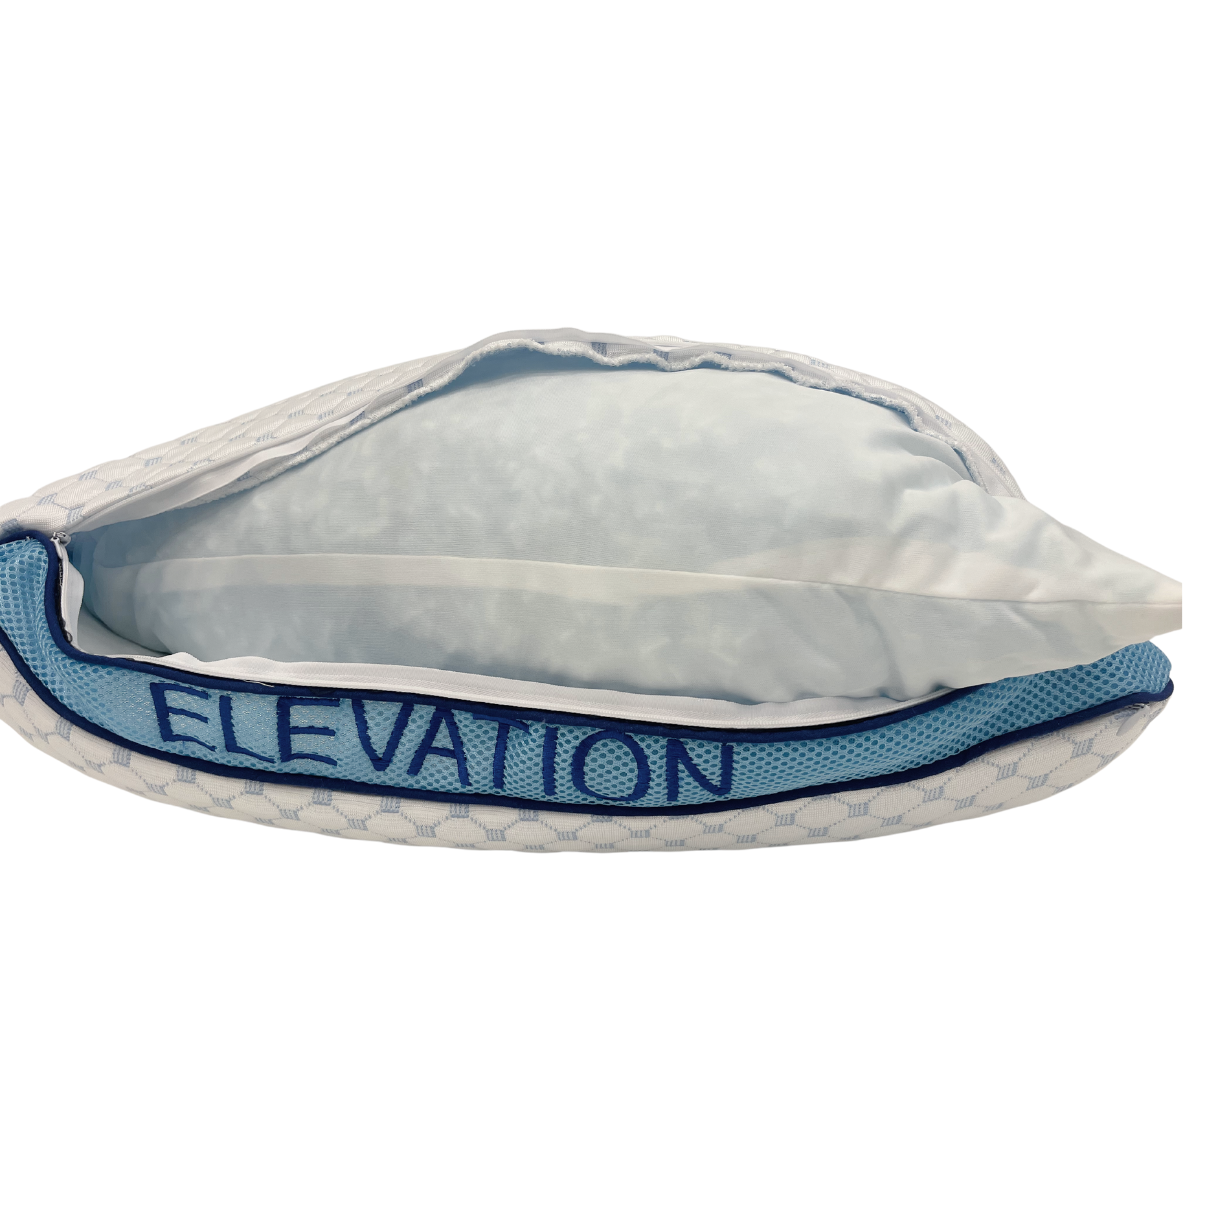 Wesloft Elevation Pillow